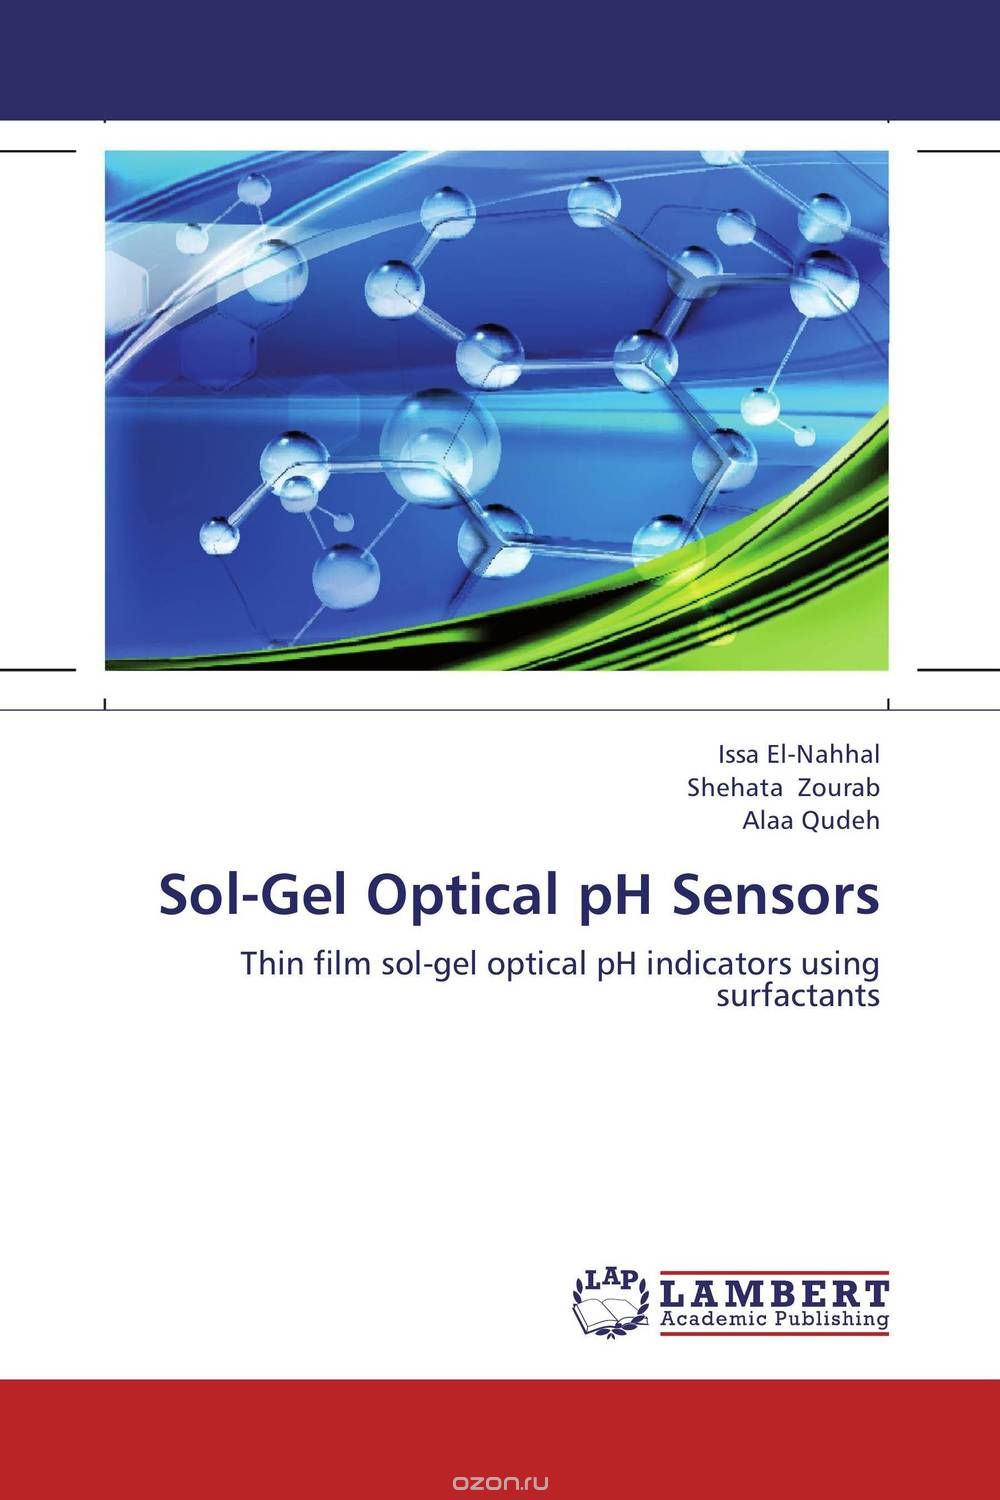 Sol-Gel Optical pH Sensors